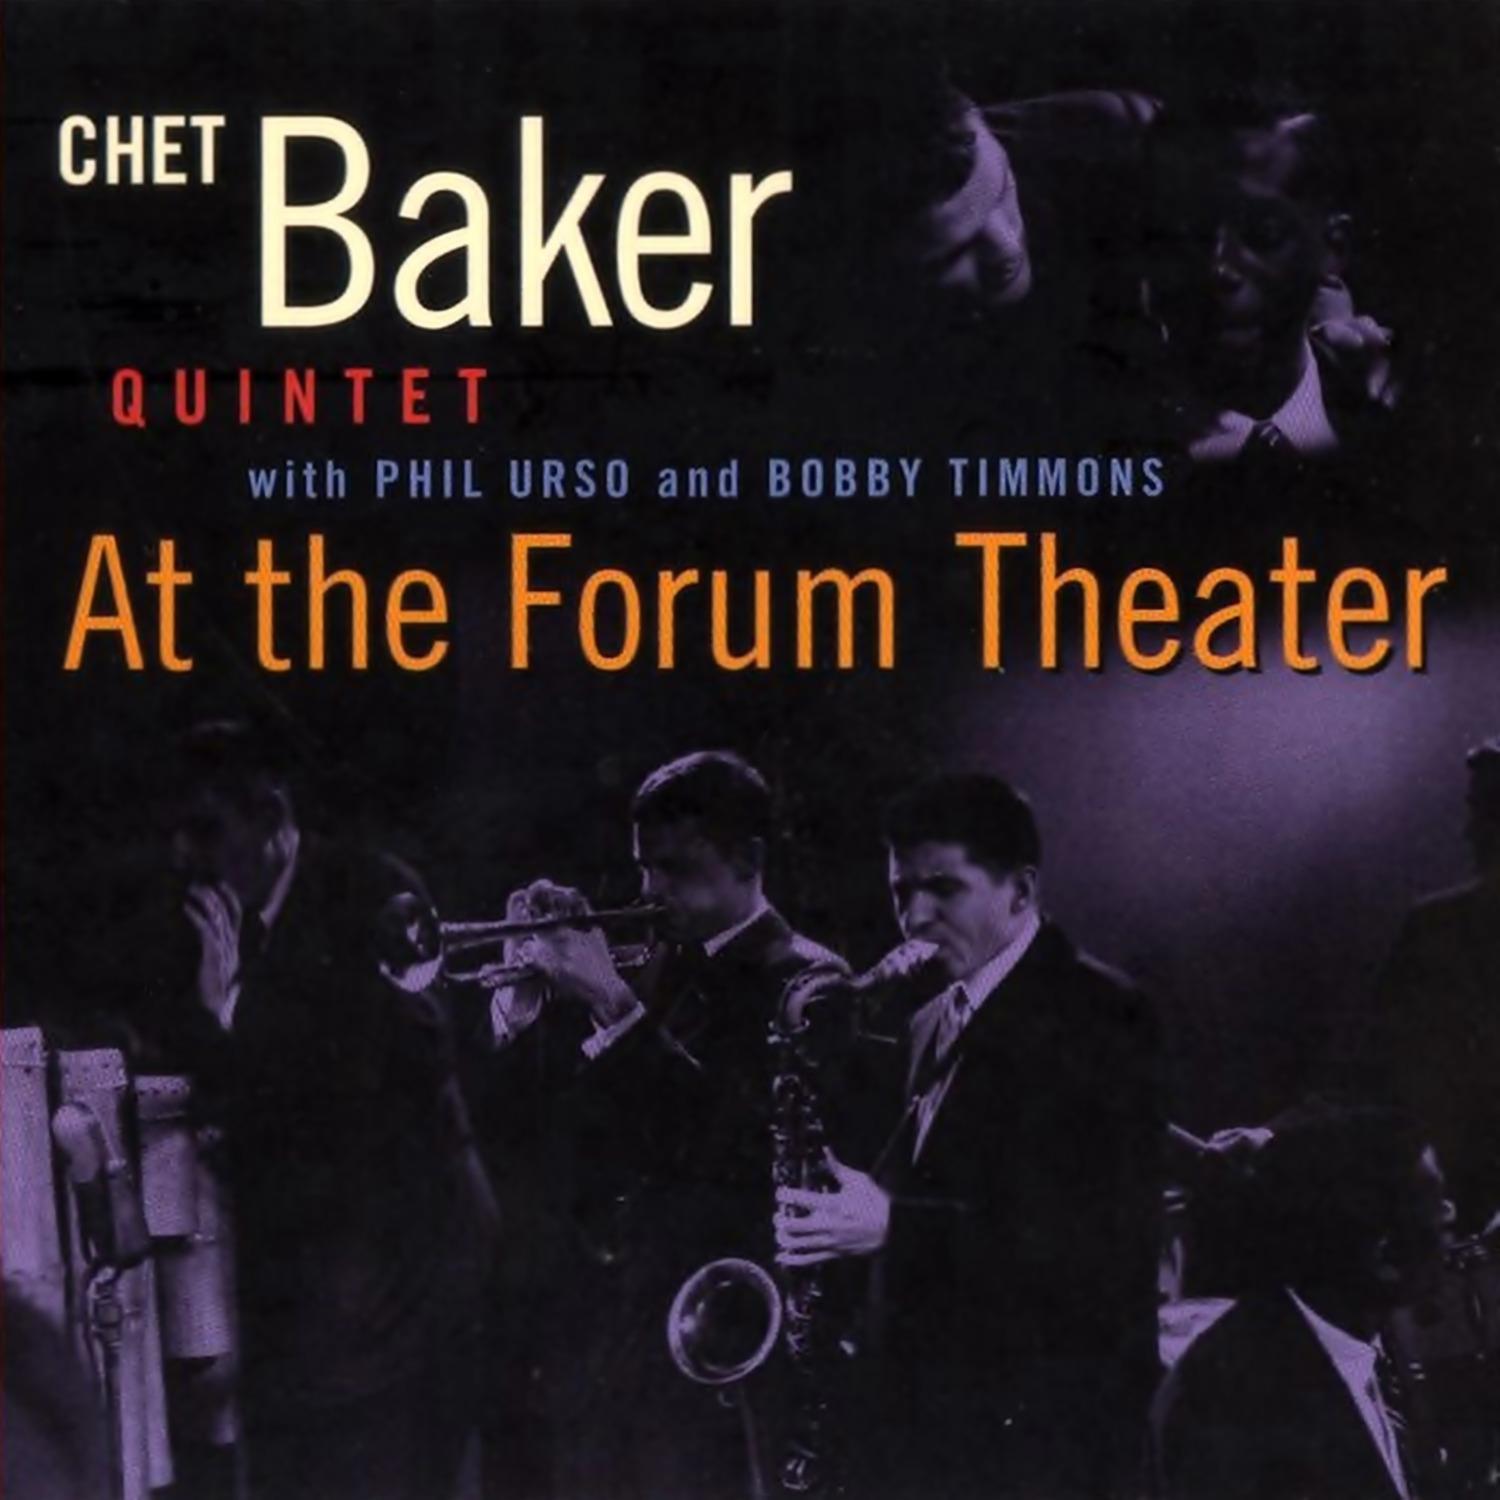 Chet Baker Quintet - Pawnee Junction (Live) [feat. Phil Urso & Bobby Timmons]